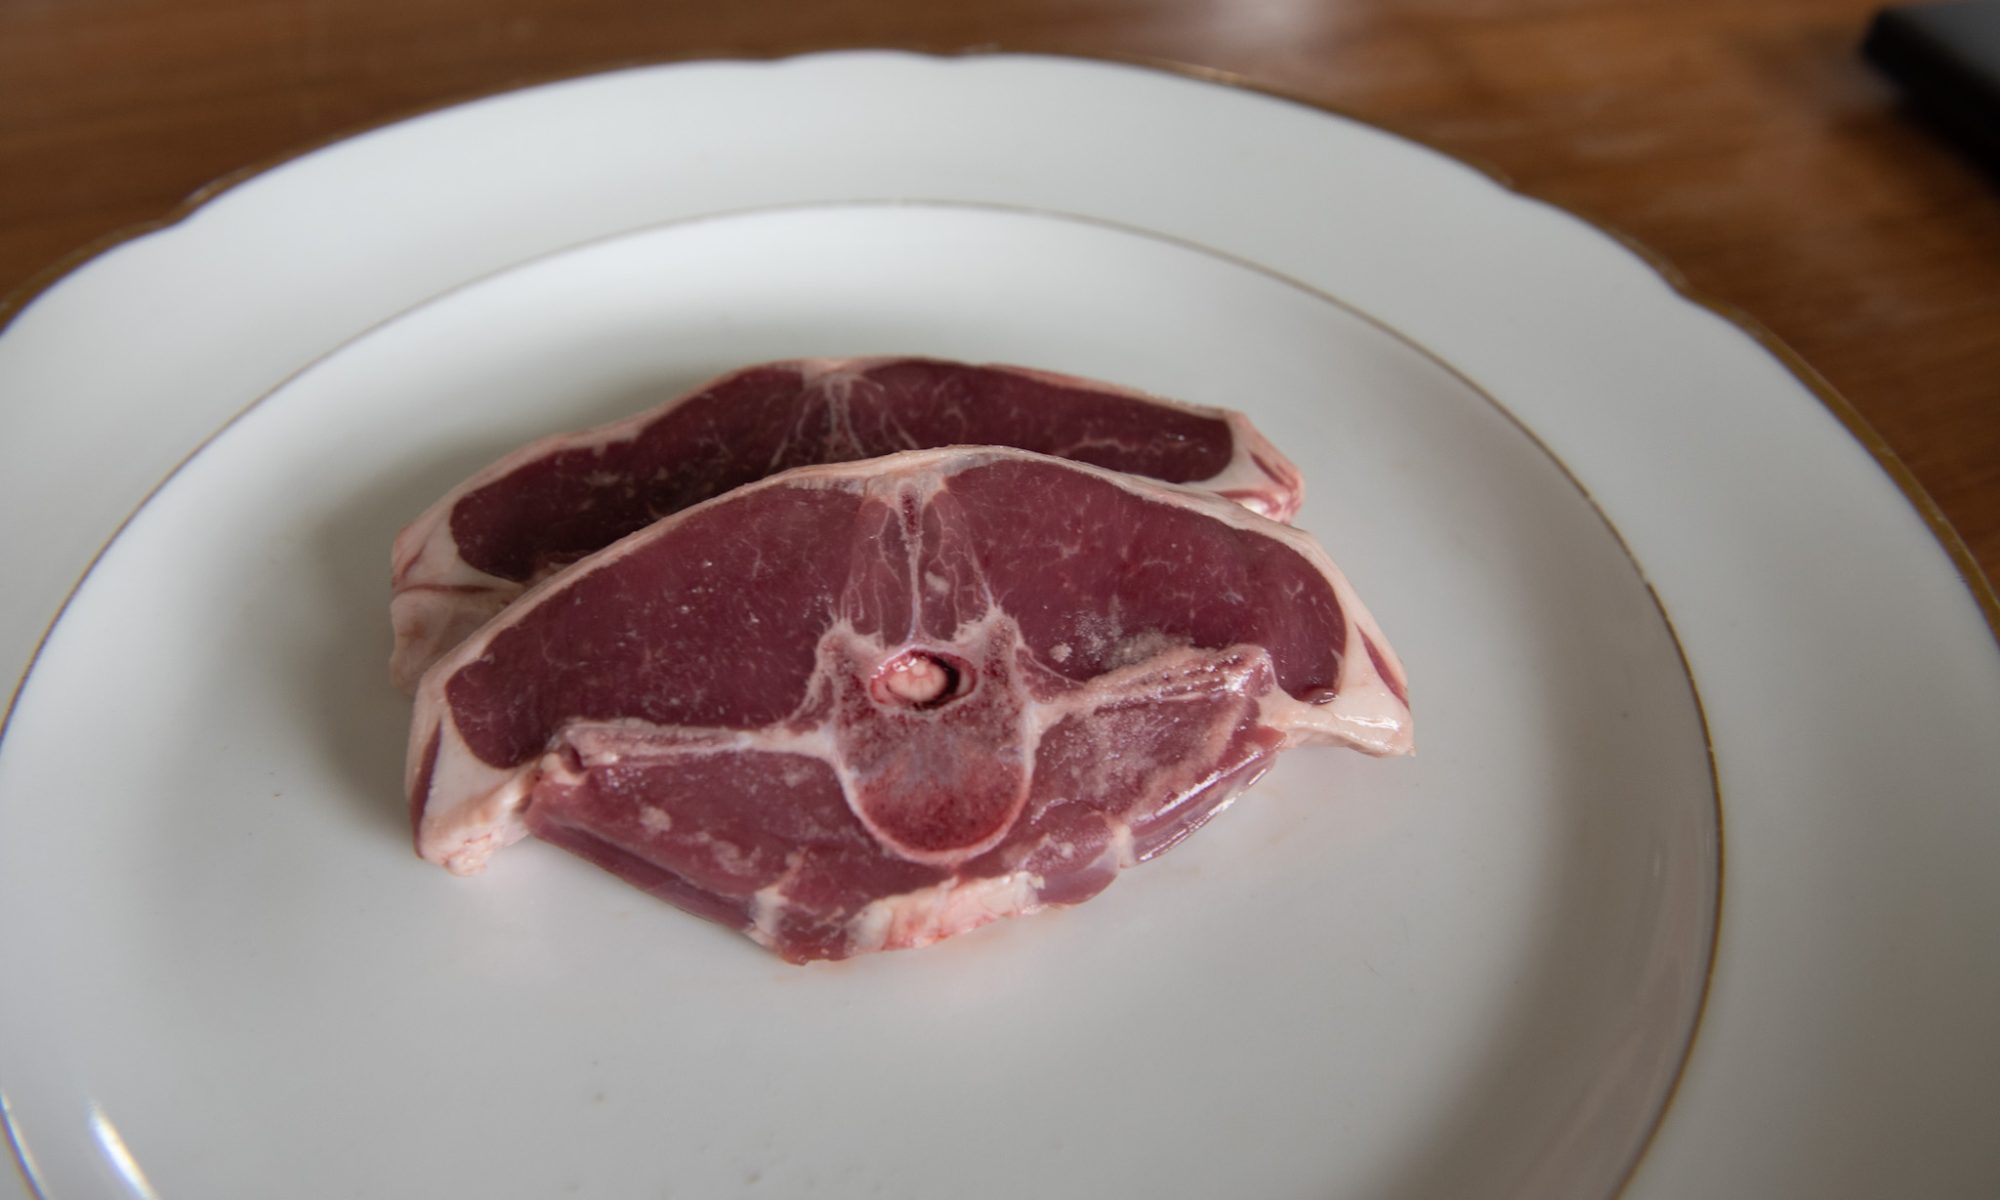 lamskotelet haaskotelet bio lamsvlees duurzaam circulair regeneratief natuurinclusief biologisch natuurvlees